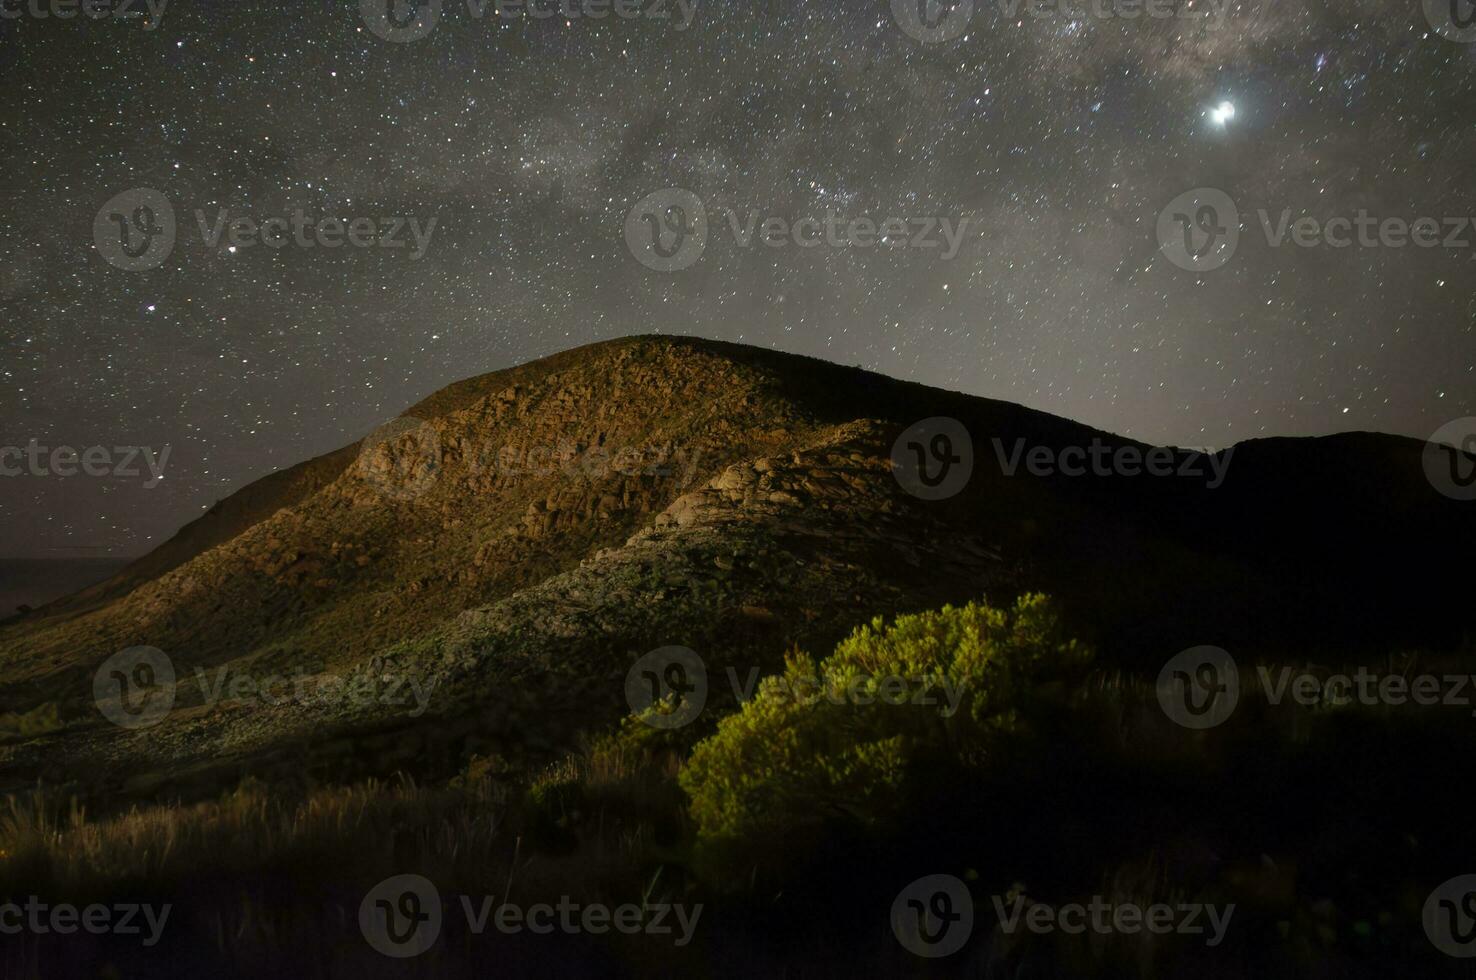 Lihue calel nationale parc, nuit paysage, la pampa, Argentine photo